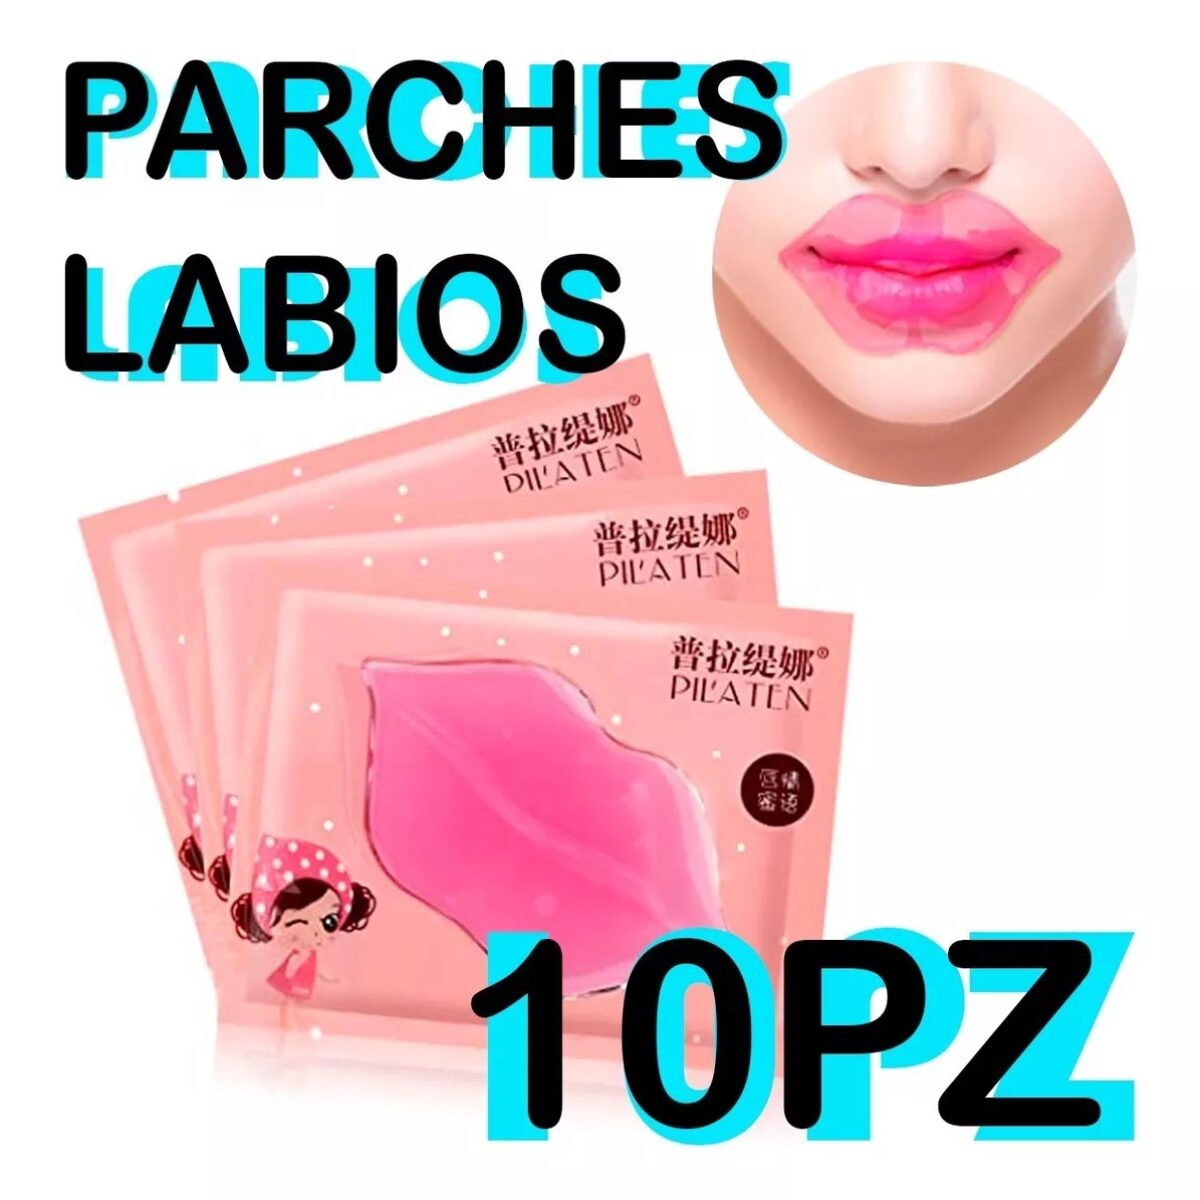 10 Pzs Pilaten Mascarilla Colageno Para Labios Original Lip Mask Belleza Cuidado Facial